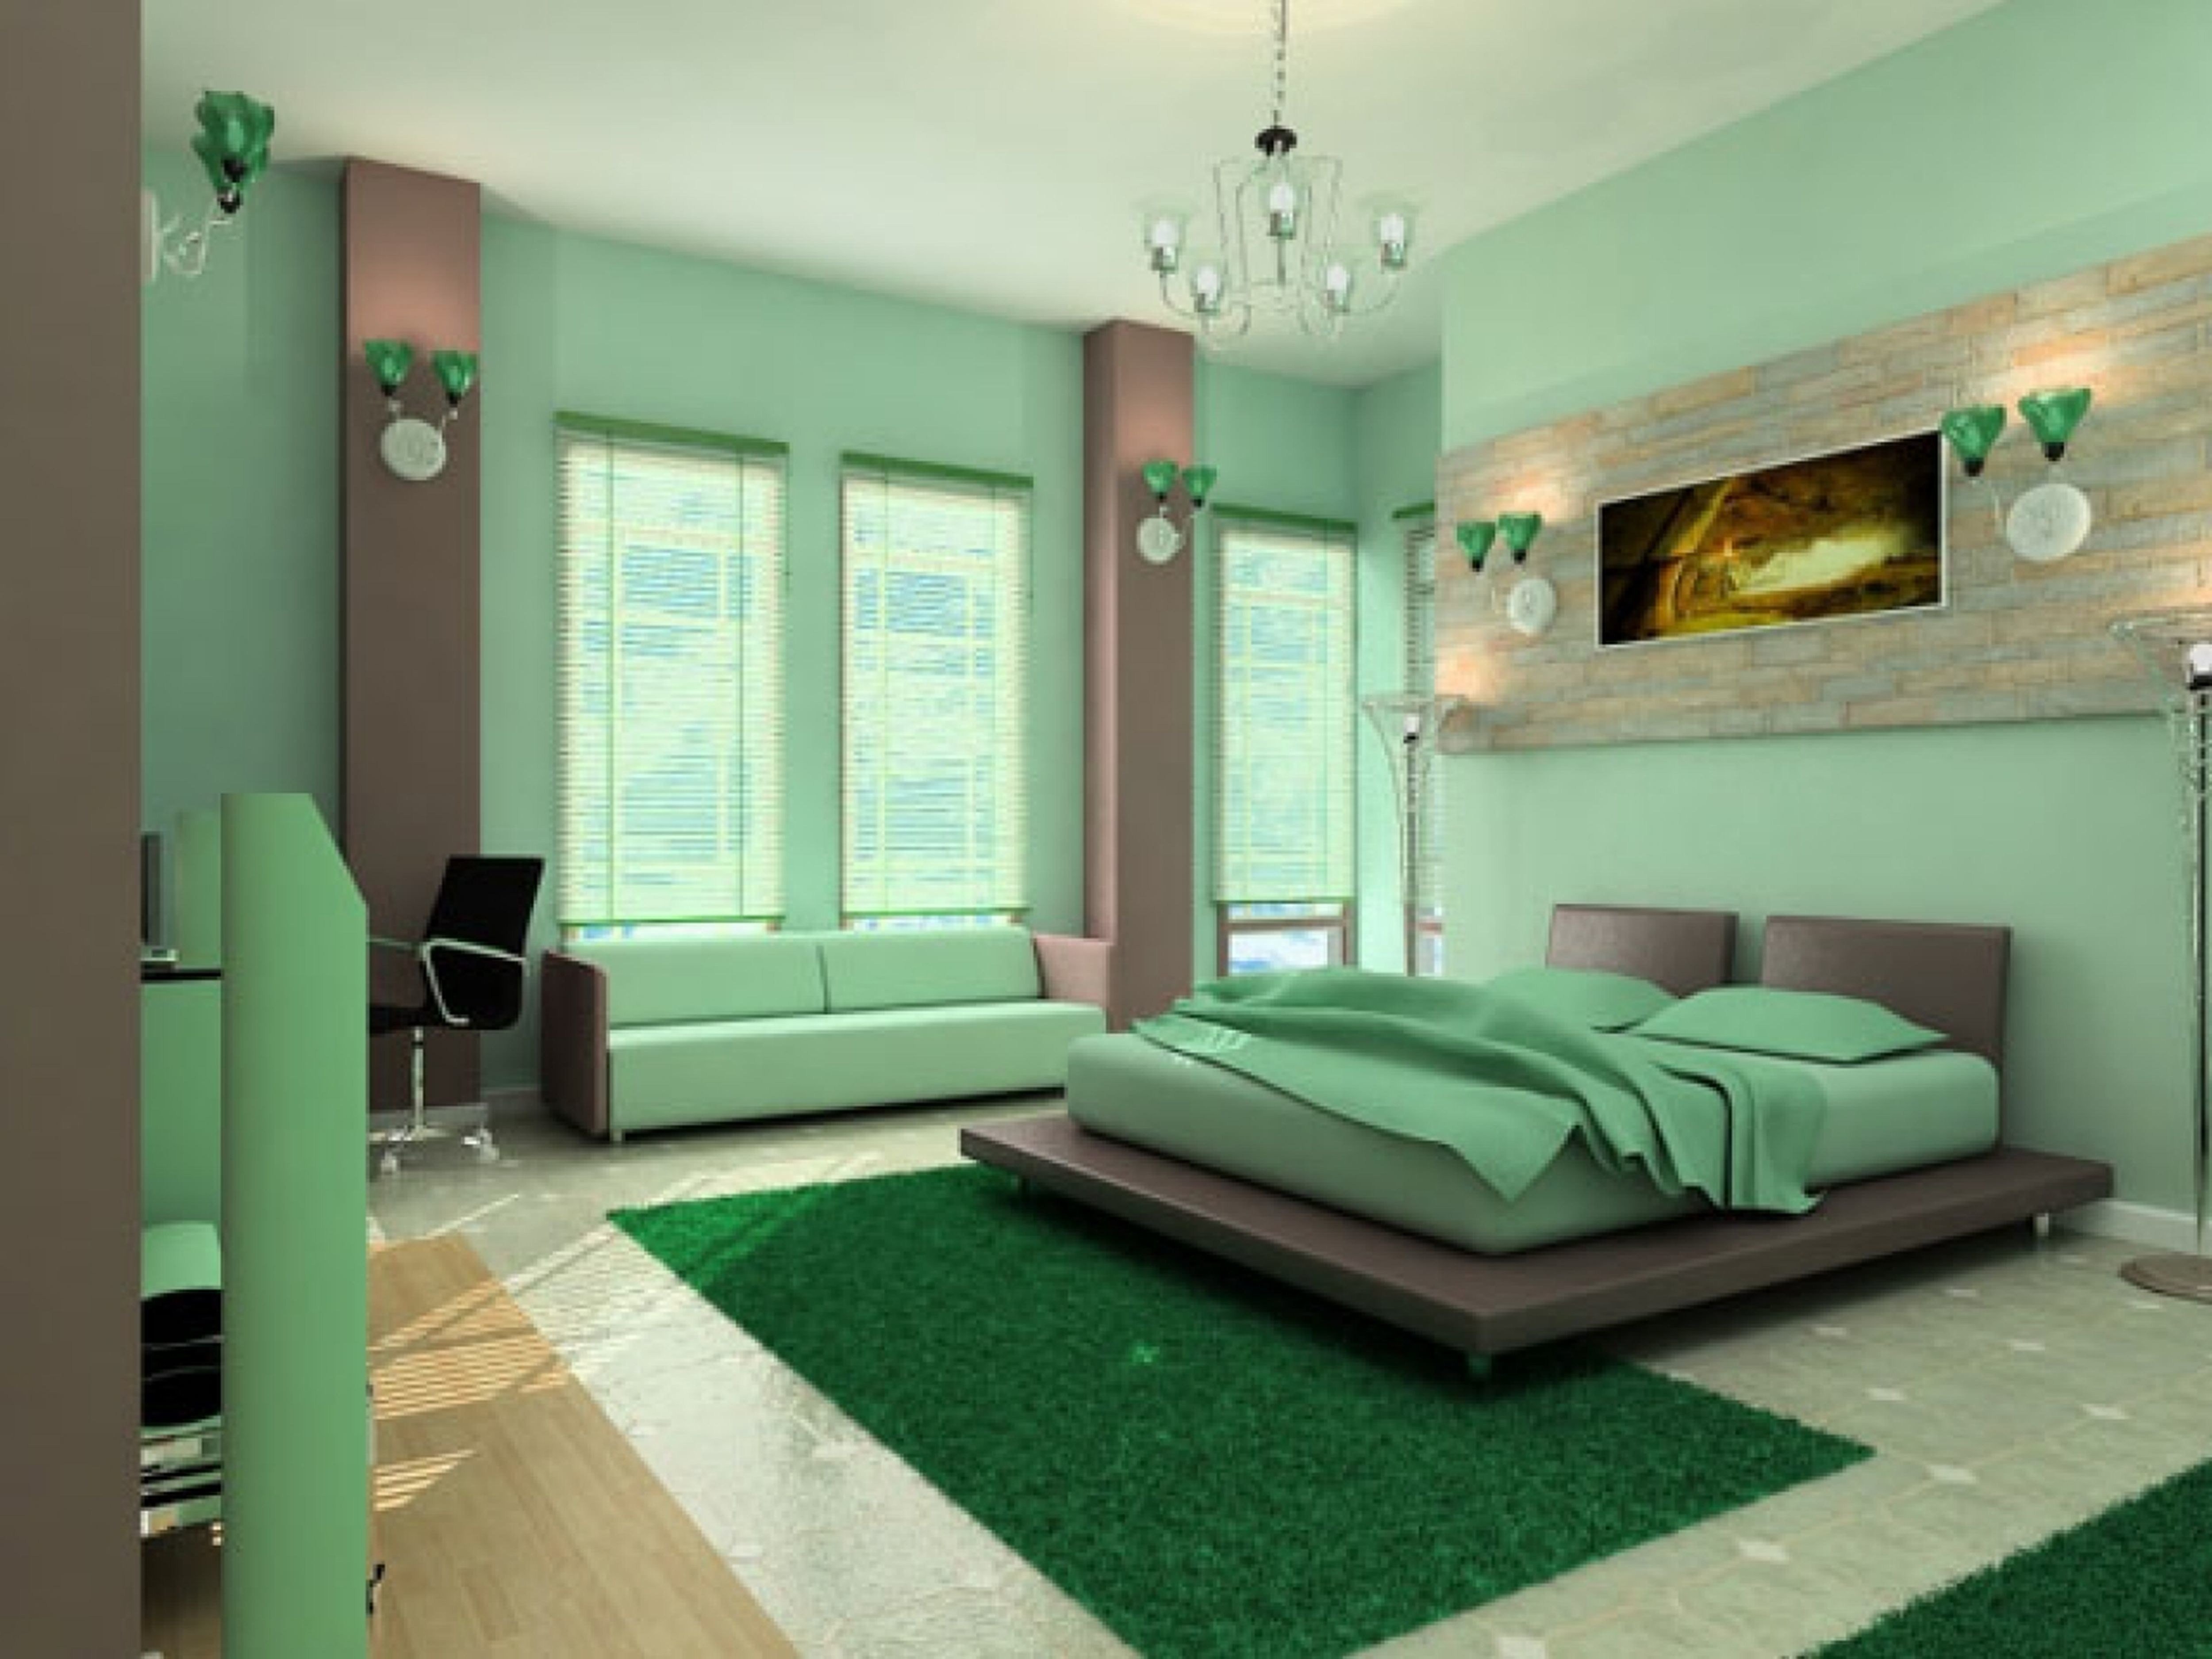 Обои в зеленых тонах. Спальня в земляных тонах. Спальня в Земляном цвете. Спальня в салатовых тонах. Спальня в зеленых тонах.